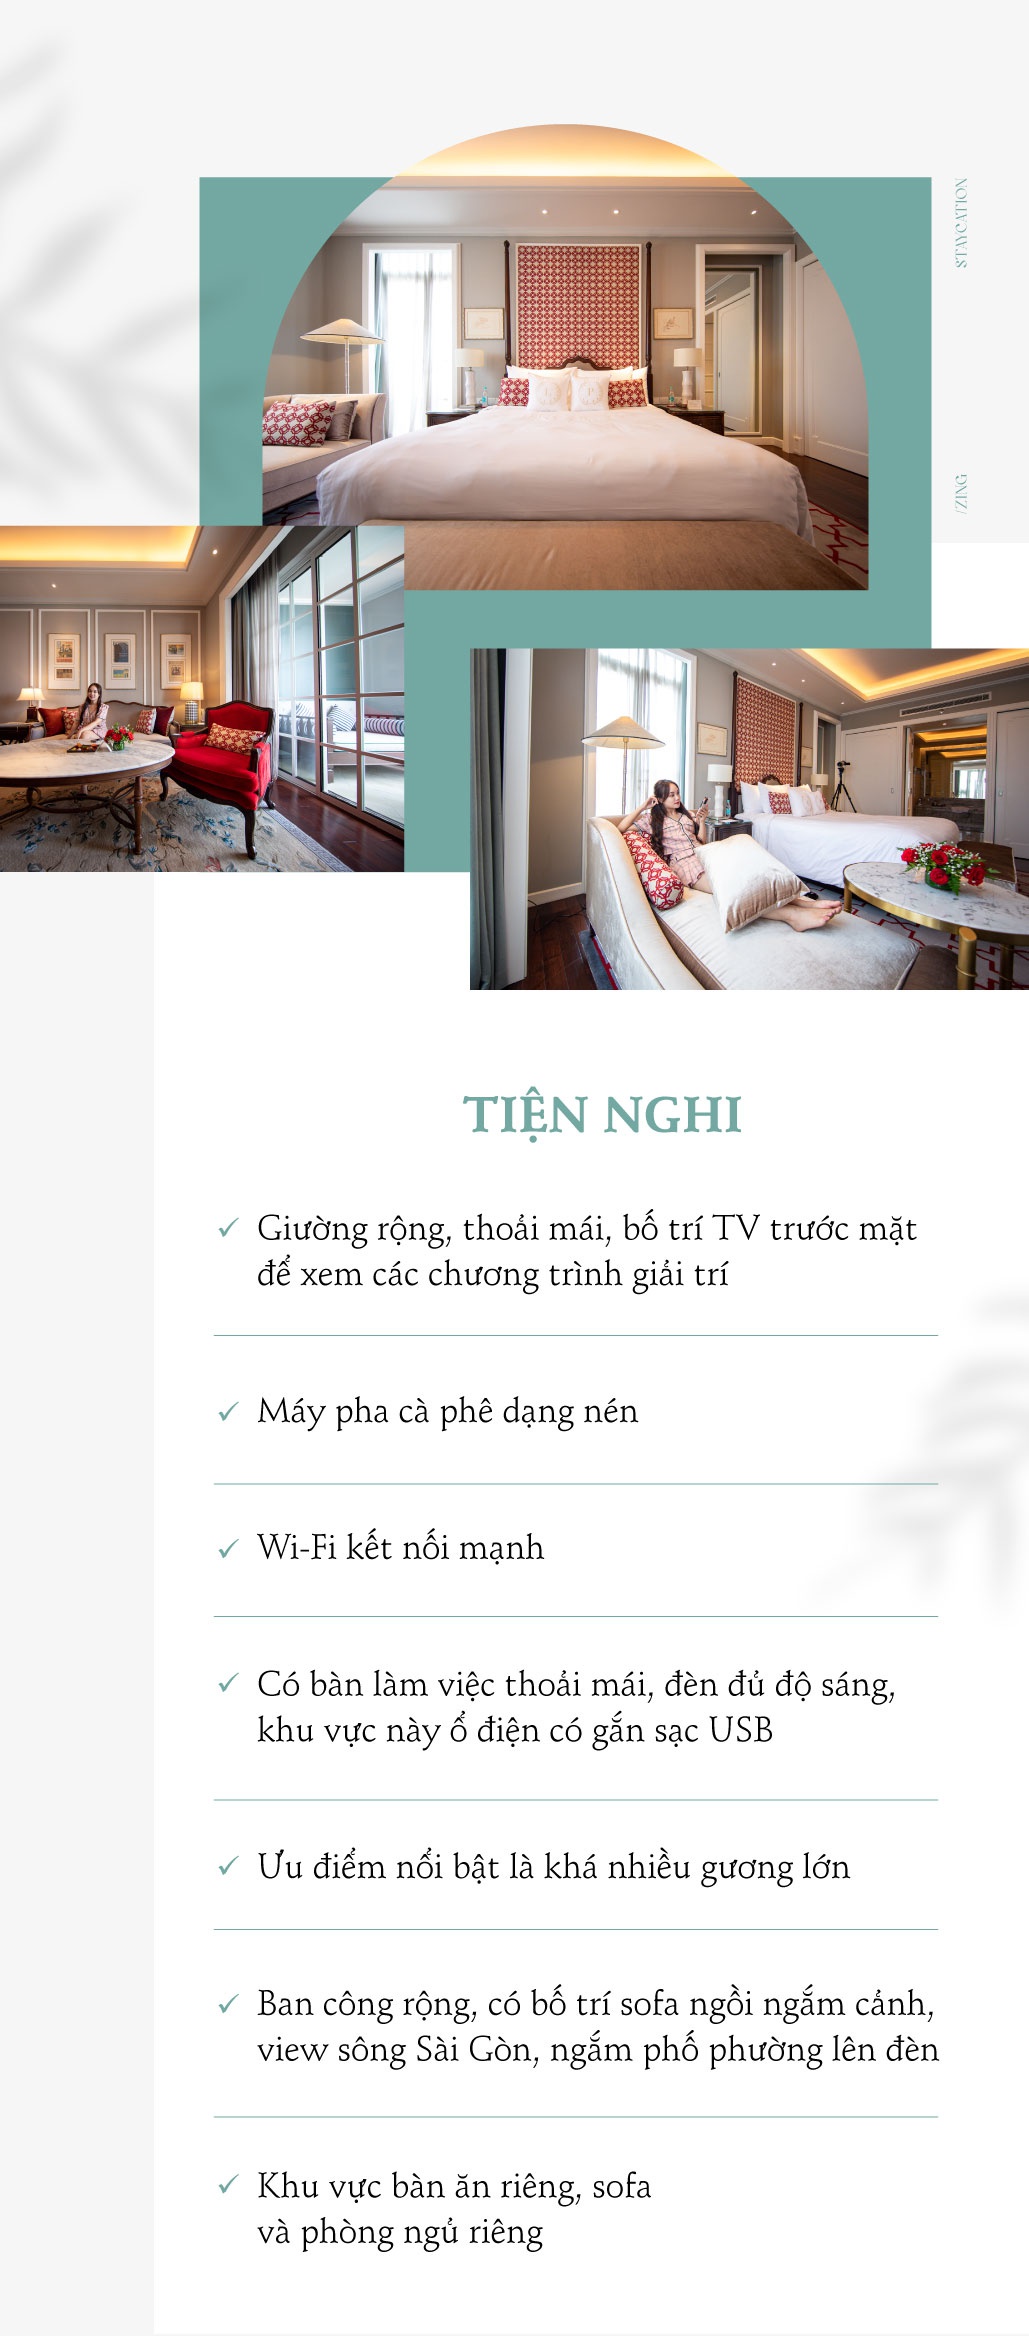 - anh_full_1_mb - Kỳ nghỉ tại chỗ ở khách sạn 5 sao bên sông Sài Gòn